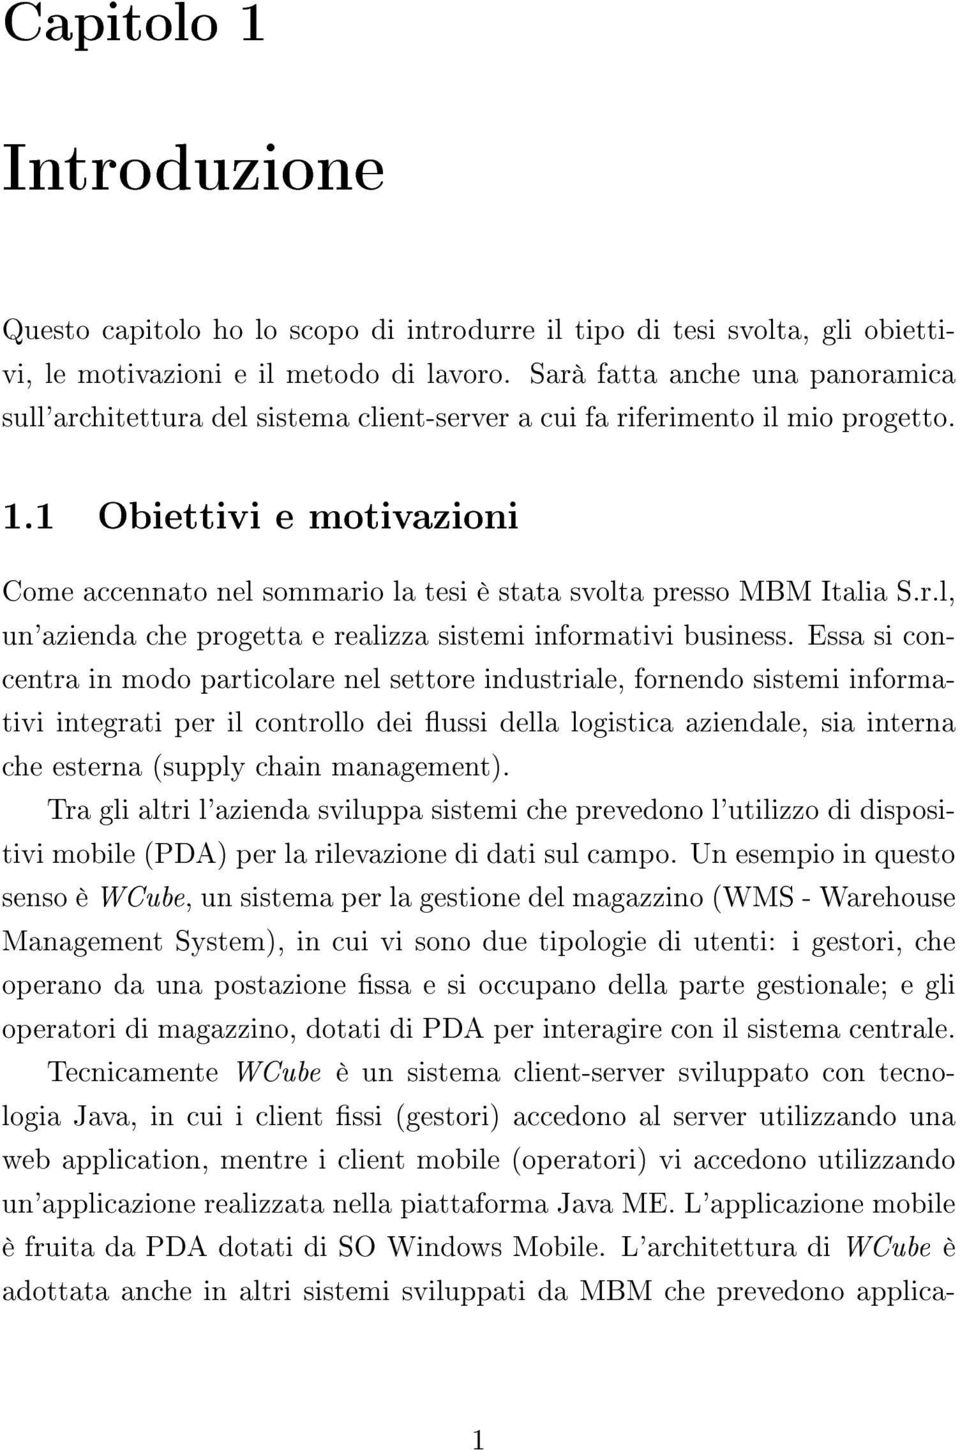 1 Obiettivi e motivazioni Come accennato nel sommario la tesi è stata svolta presso MBM Italia S.r.l, un'azienda che progetta e realizza sistemi informativi business.